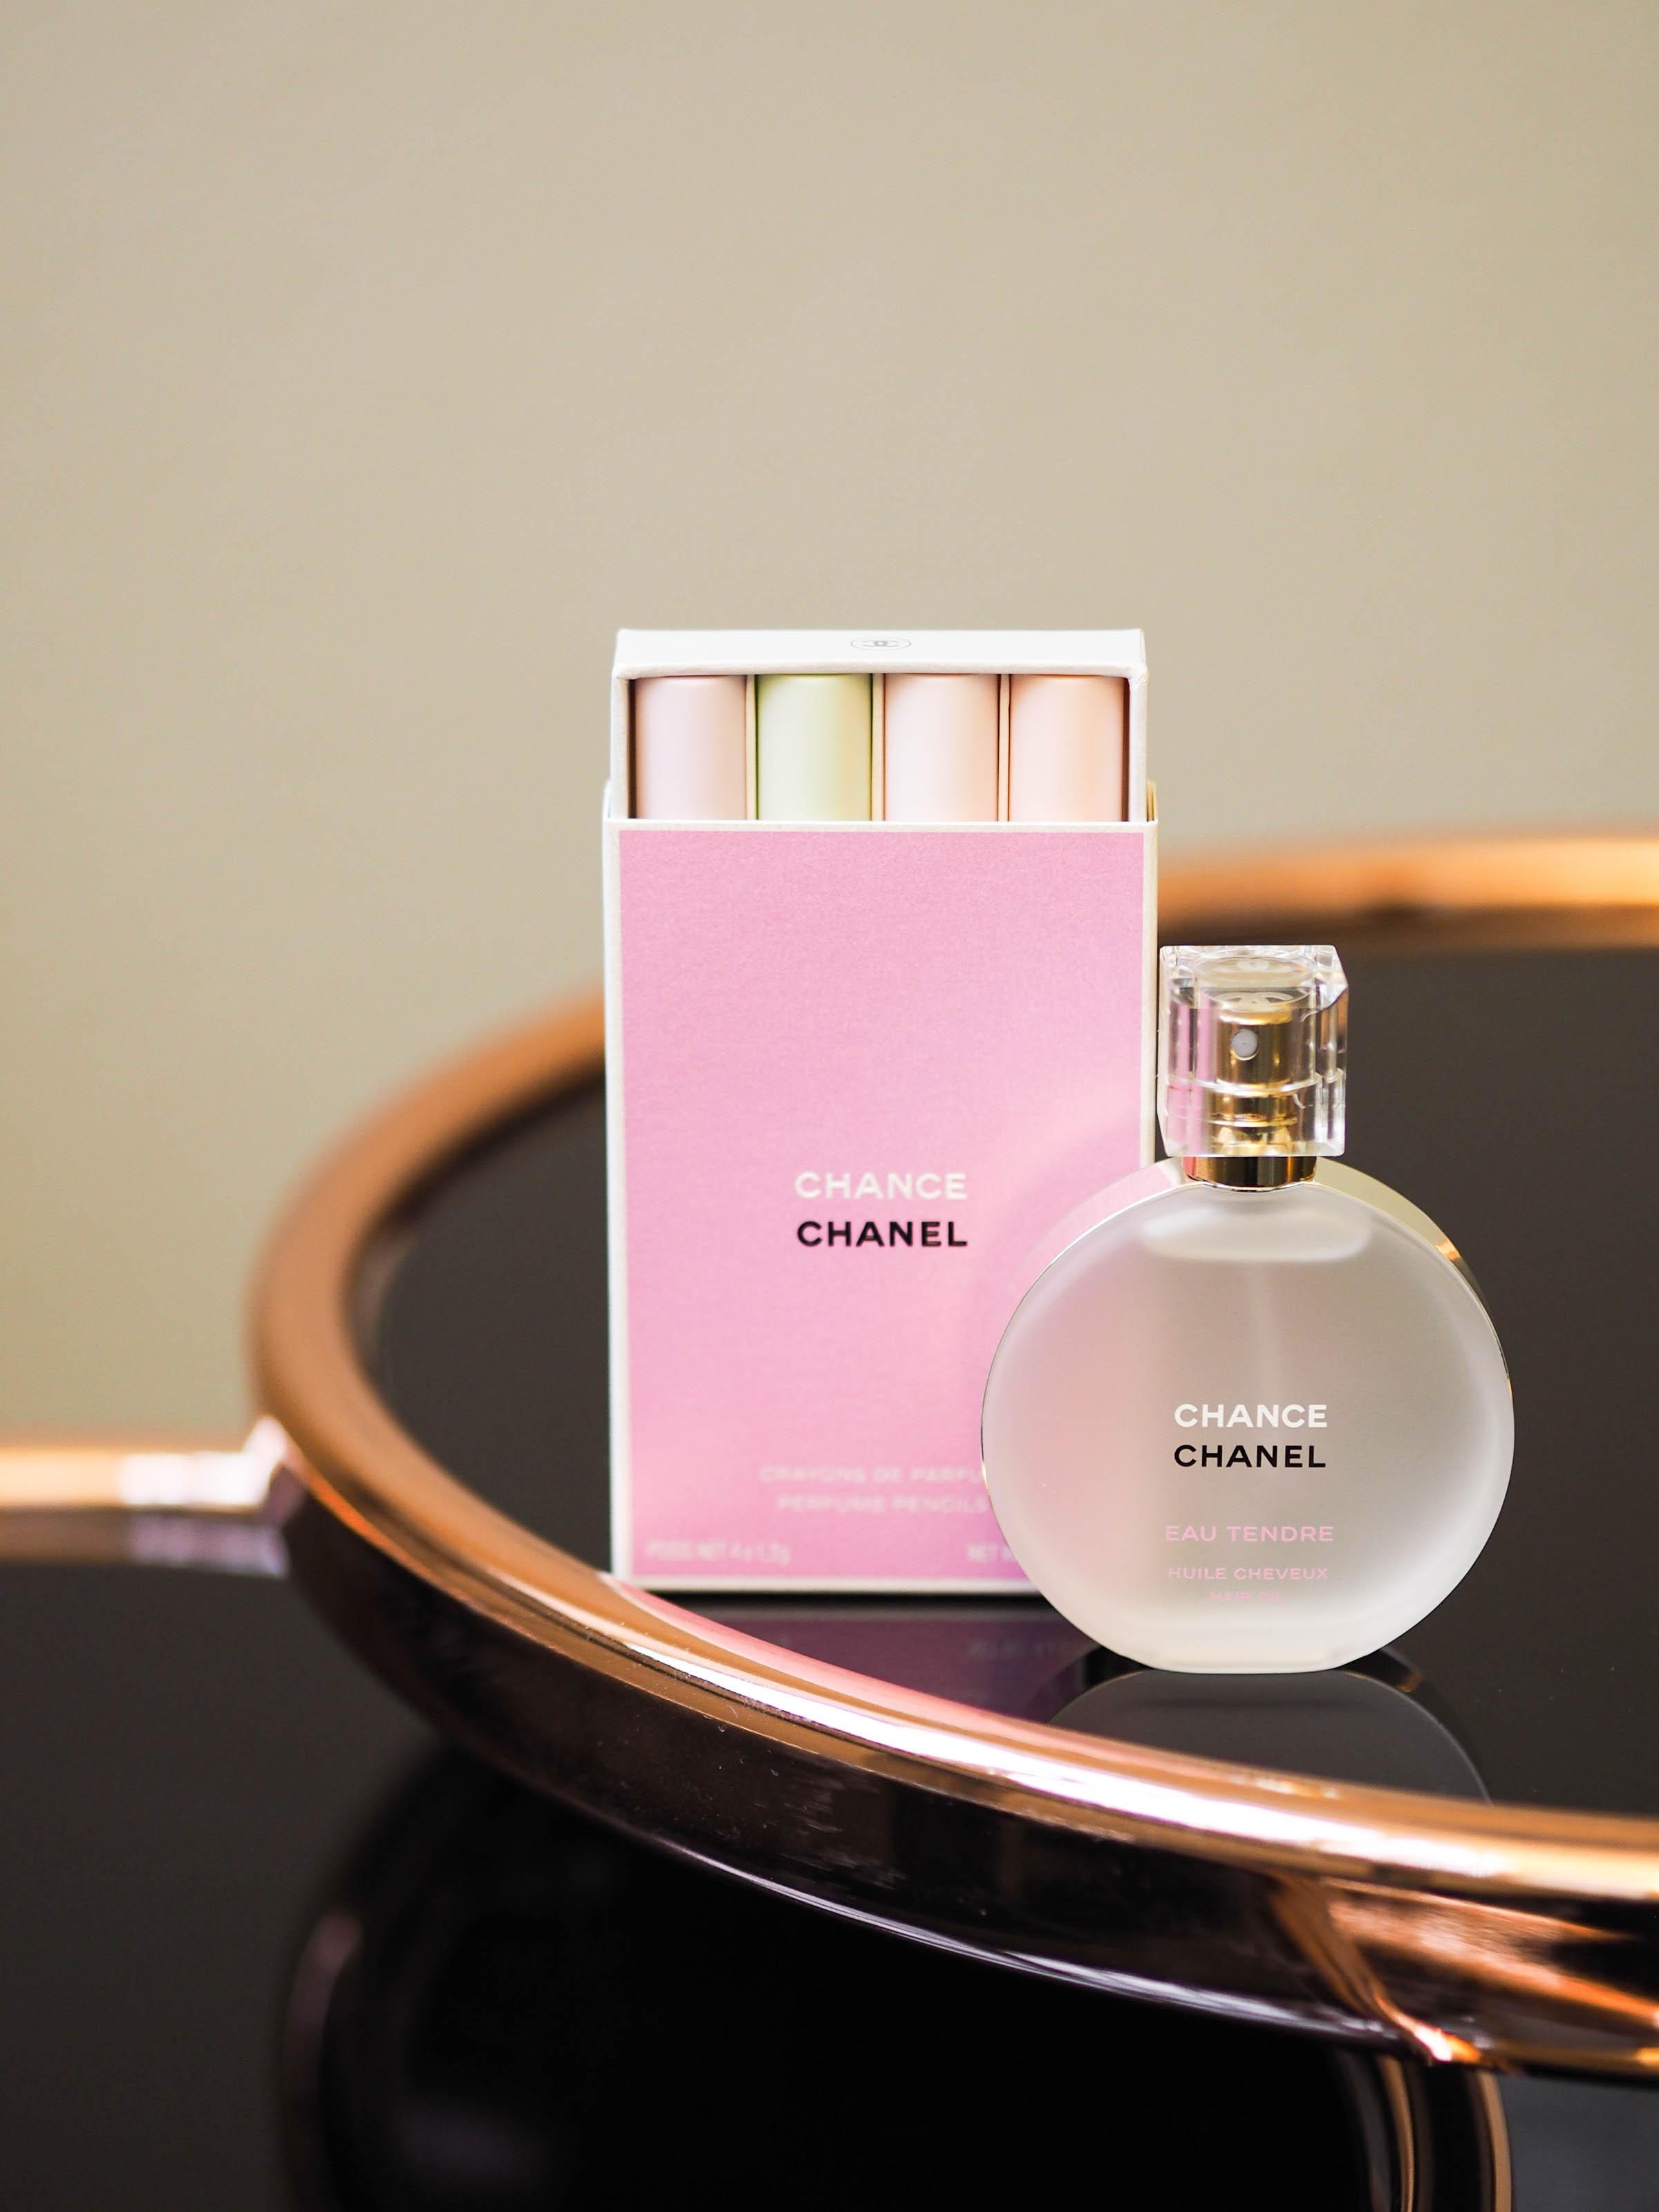 Chanel-Fans aufgepasst: Die Chance-Düfte gibt's jetzt auch als Haaröl & Parfüm-Sticks! #beautylieblinge #chanel #duft